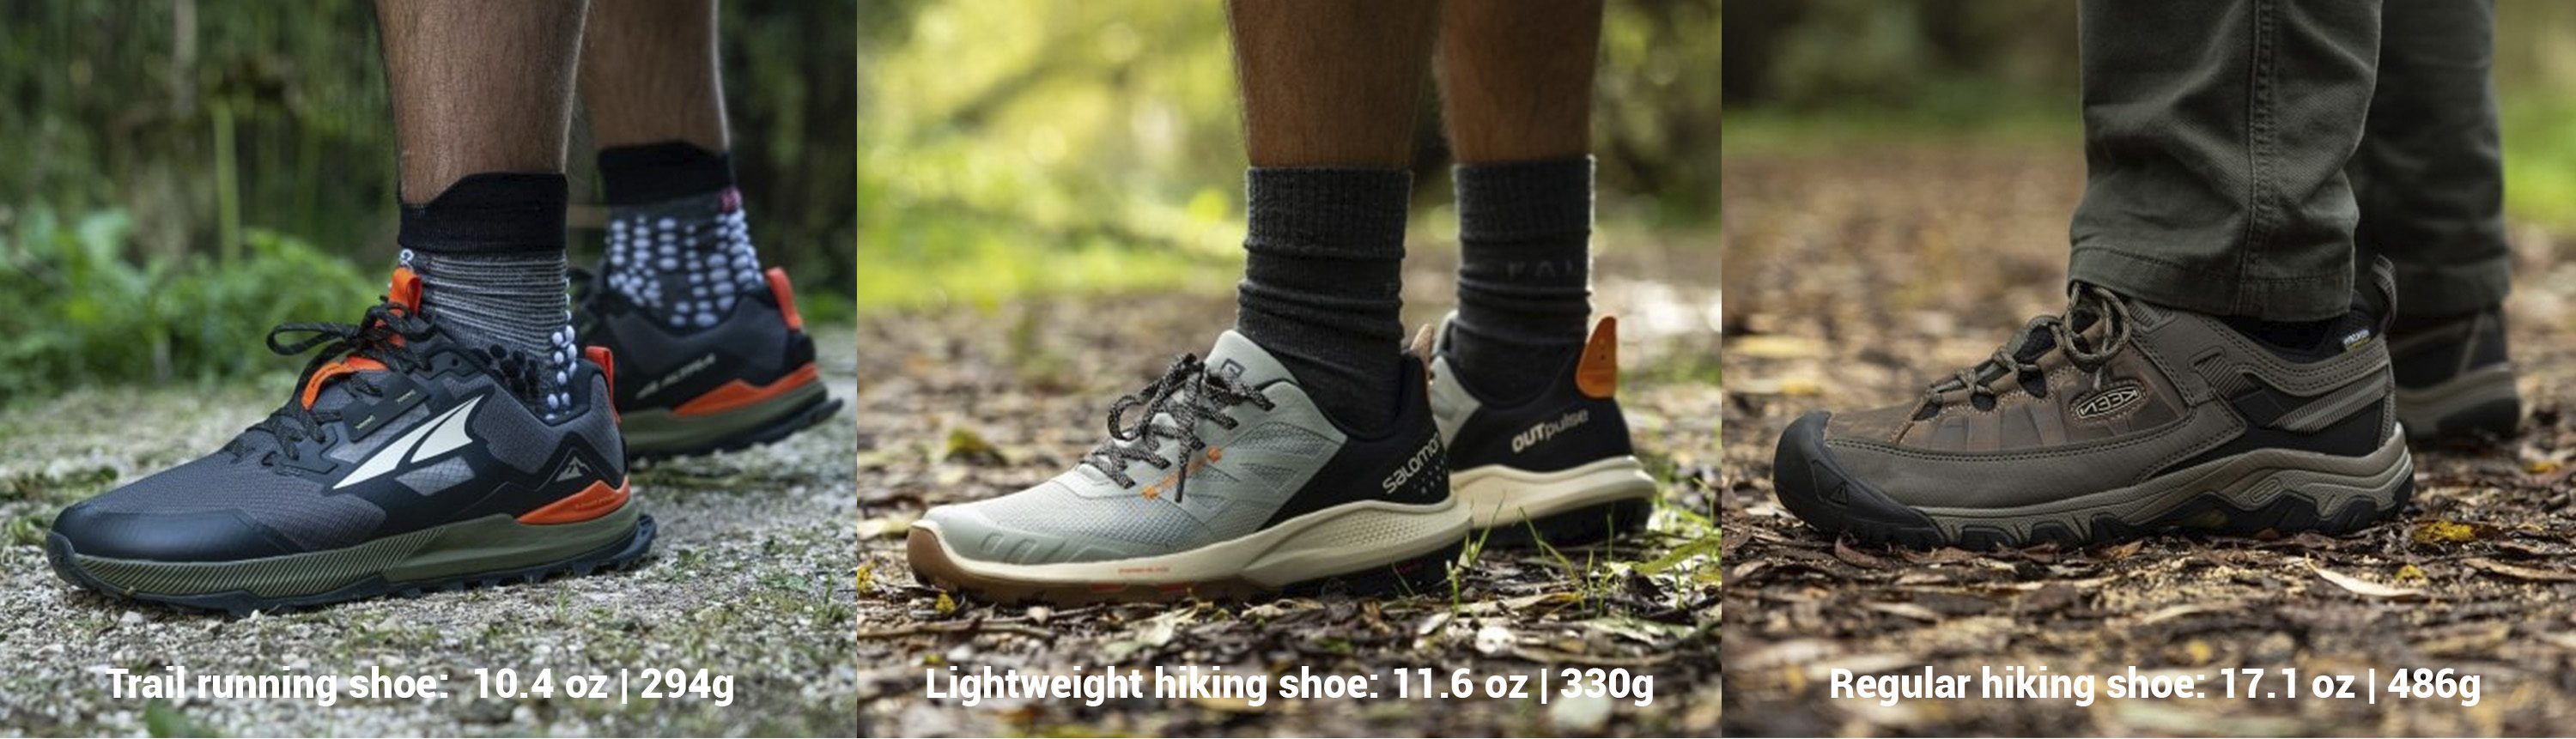 Zapatillas de trail running vs zapatillas de senderismo de poco peso vs zapatillas de senderismo normales